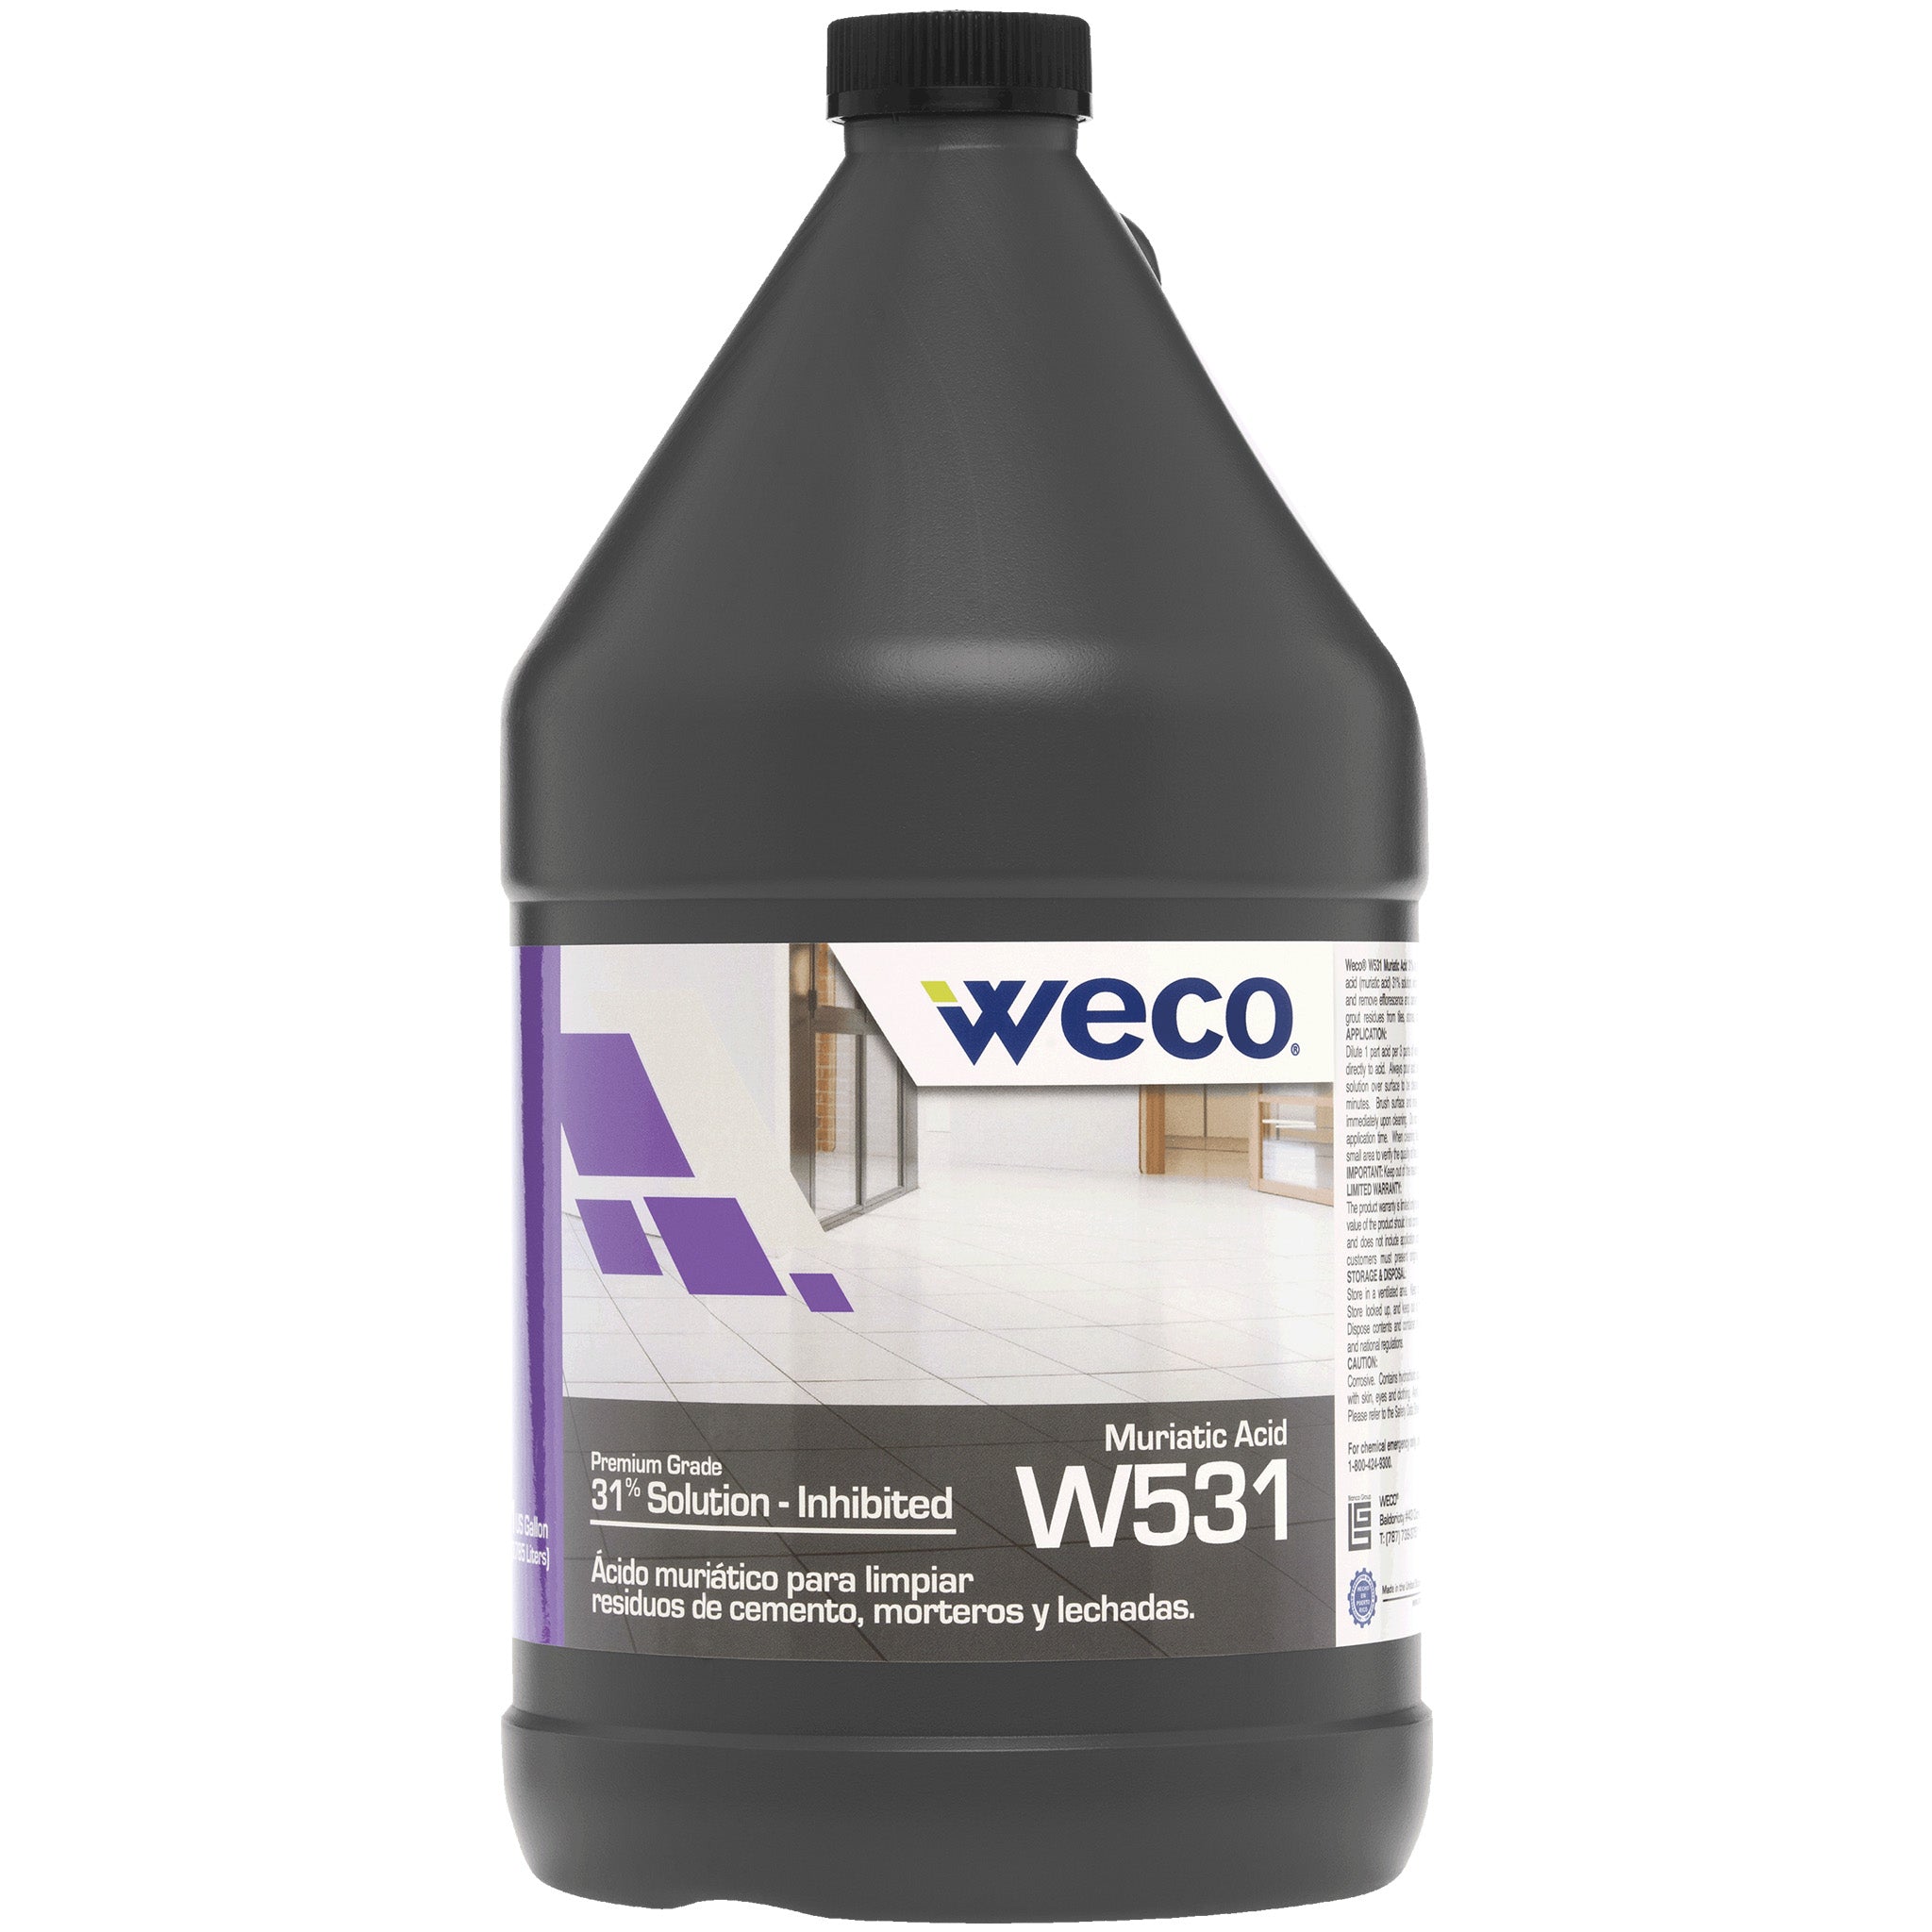 W-531 Muriatic Acid 31%